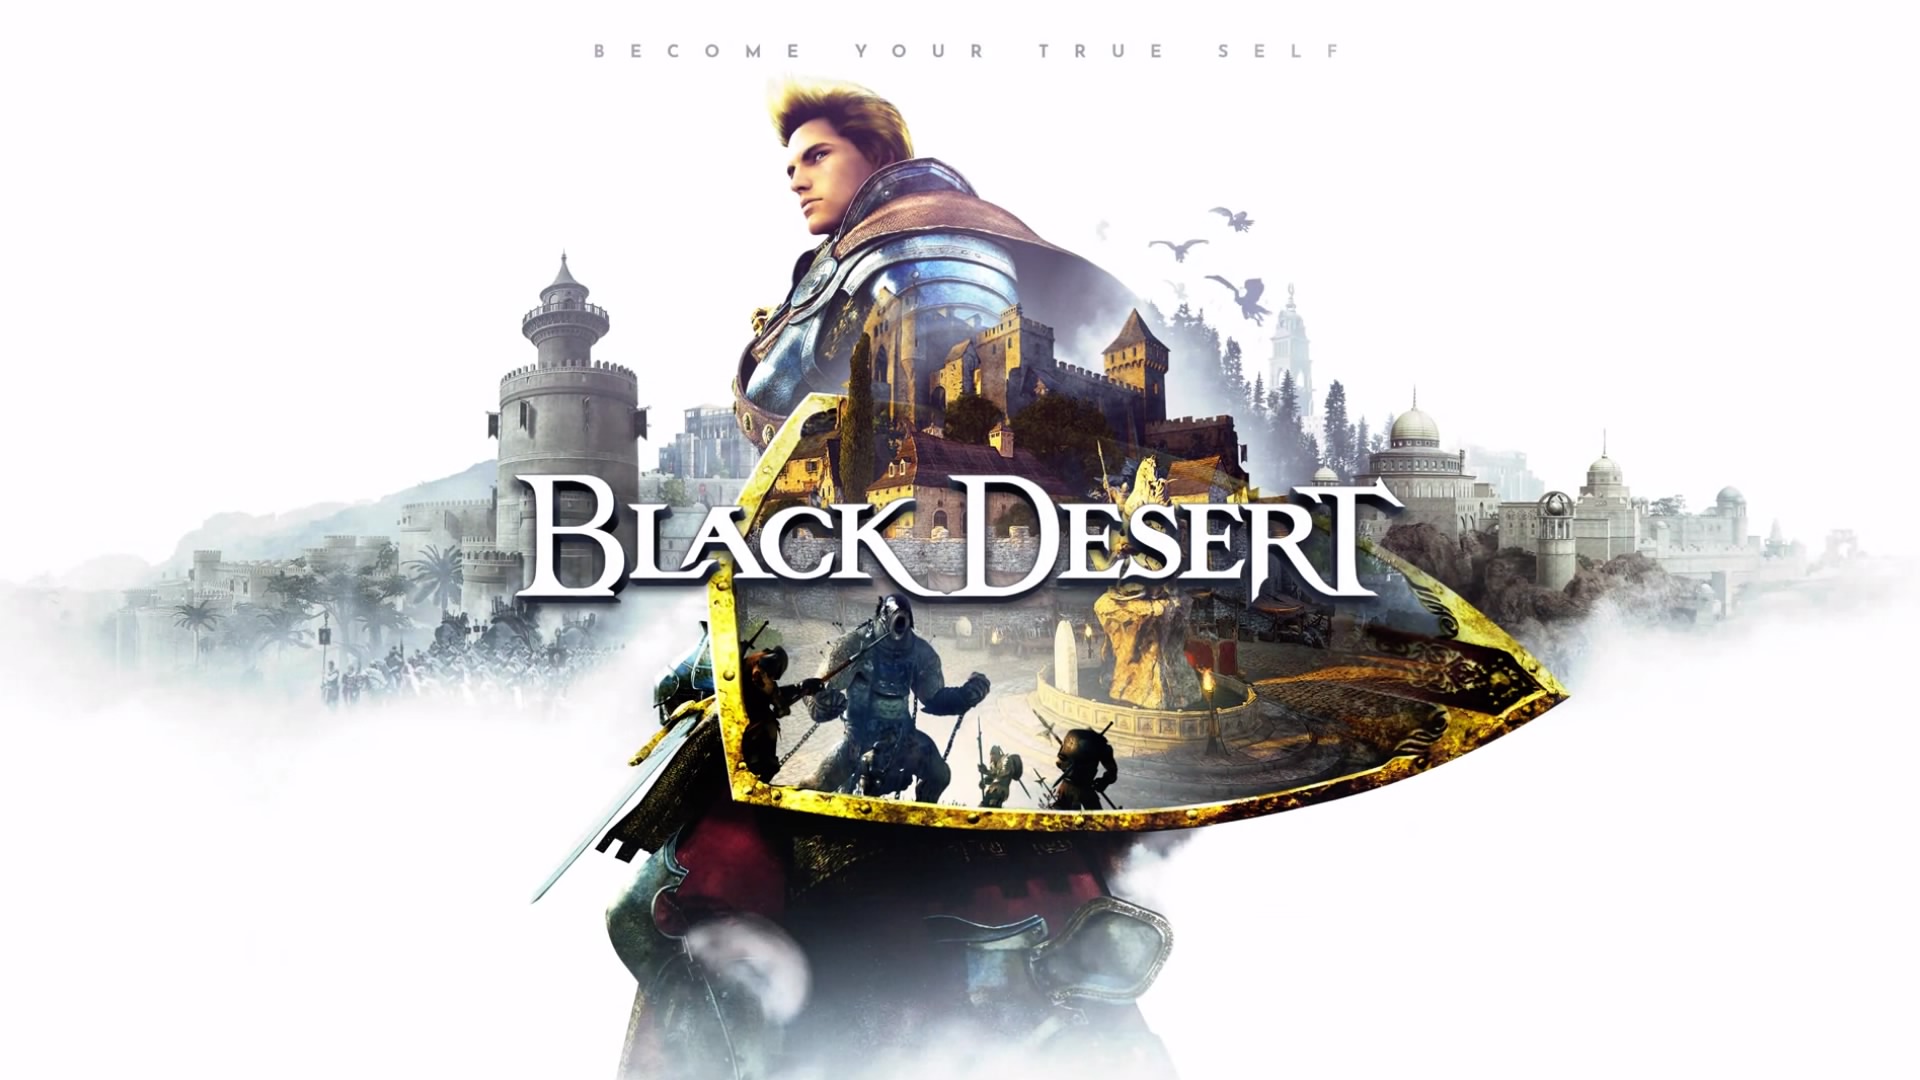 Black Desert Online PS4 Gameplay 